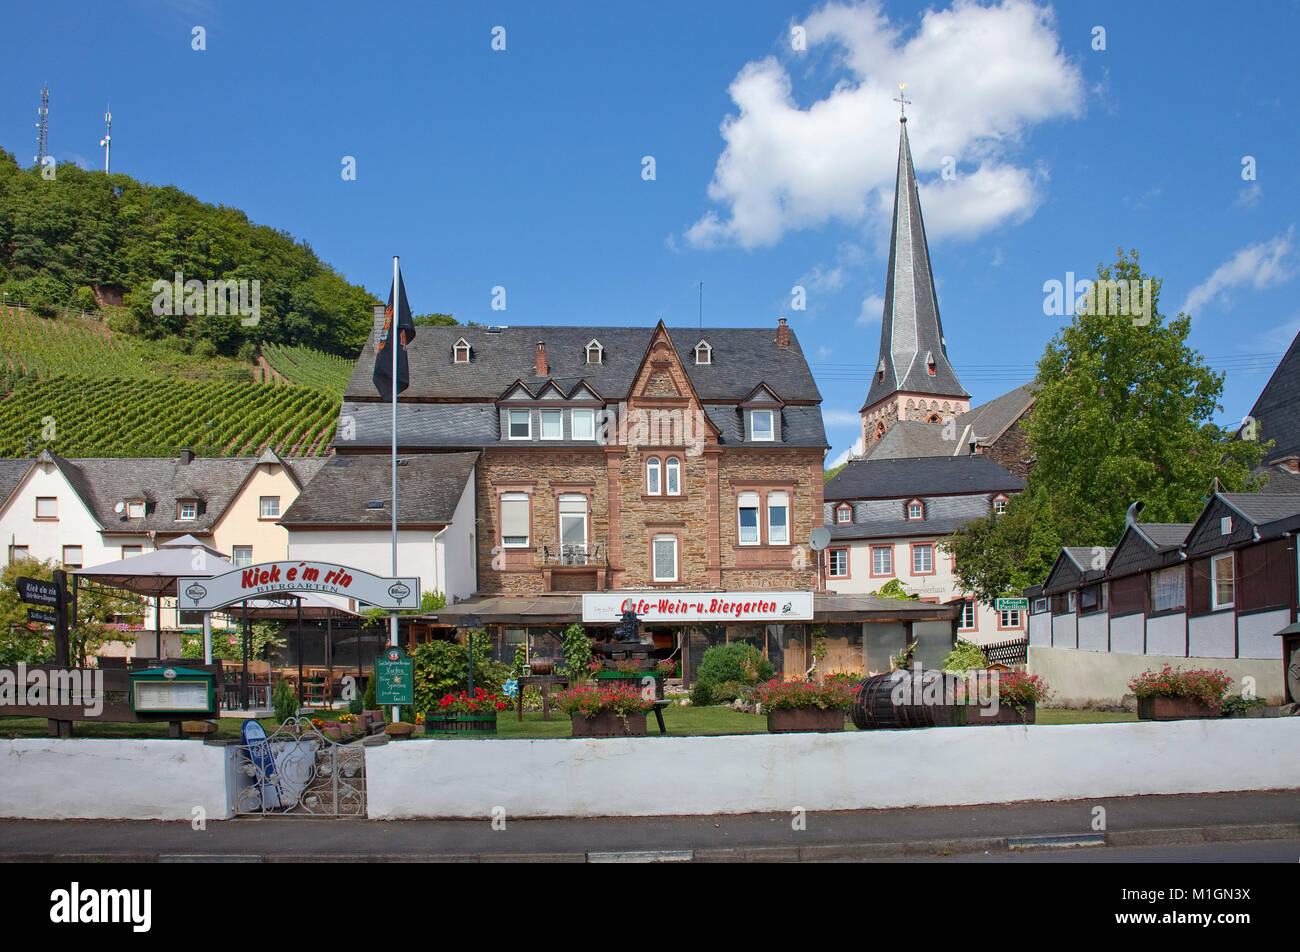 Cafe, Wein und Biergarten an der Mosel Dorf Uerzig, Mosel, Rheinland-Pfalz, Deutschland, Europa Stockfoto